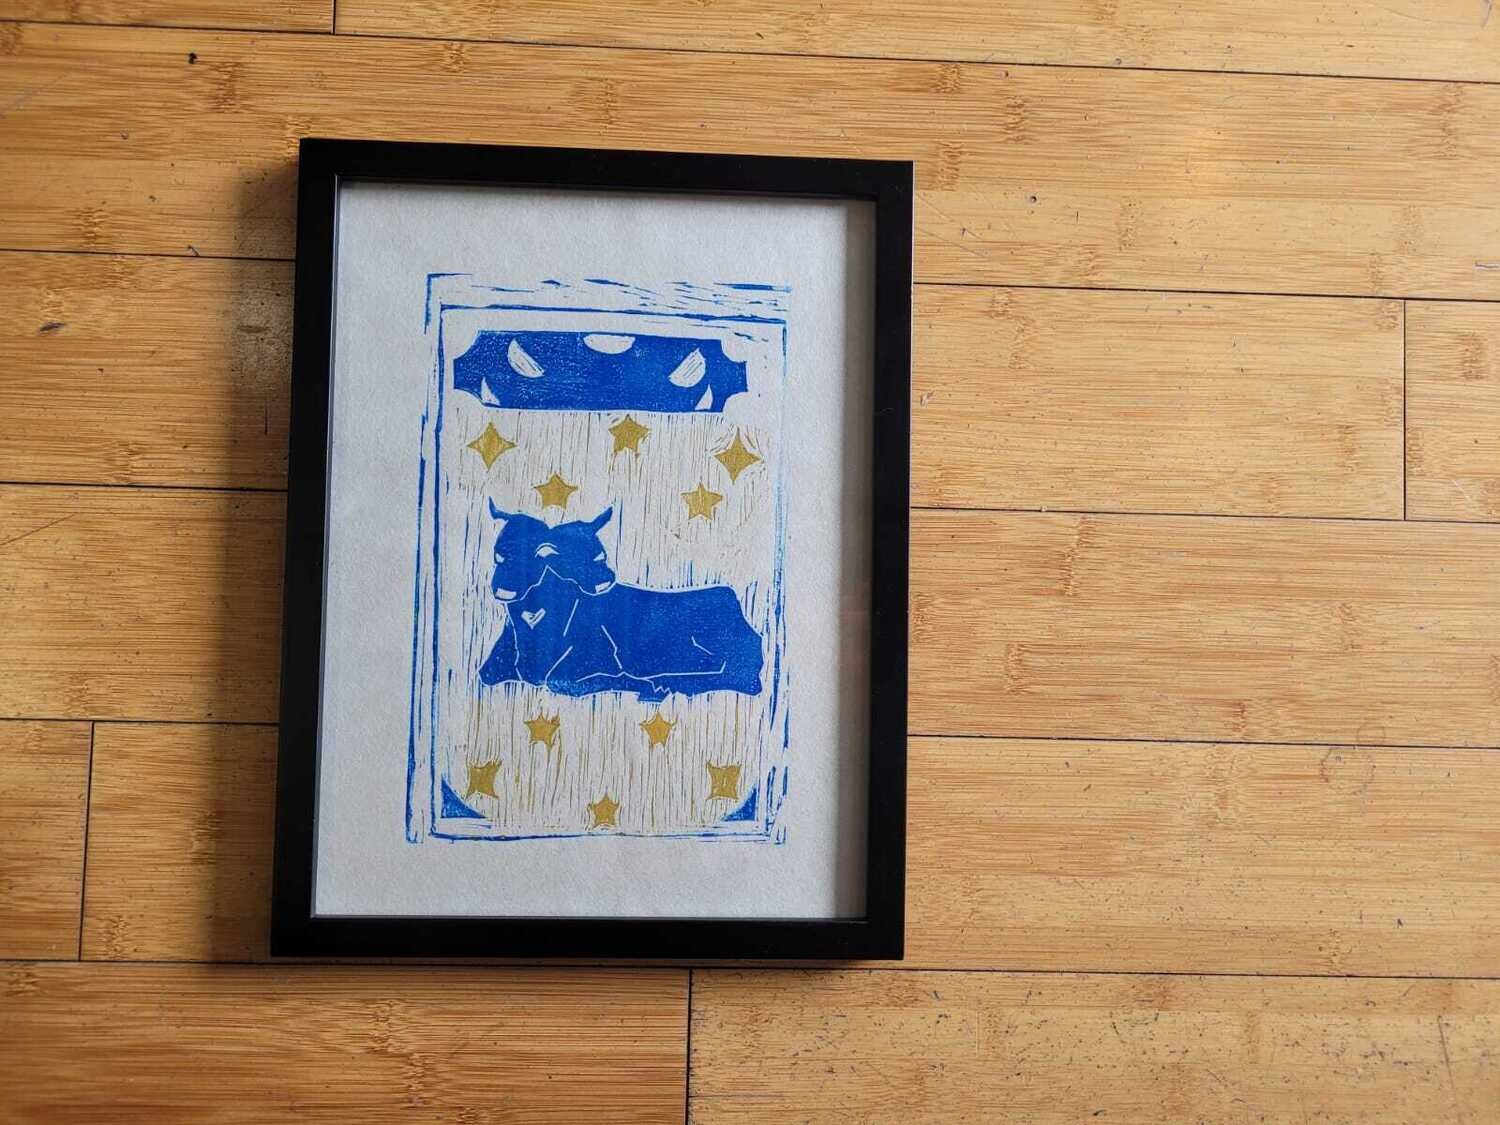 Two Headed Calf - Framed Block Print by Finn Tompsett